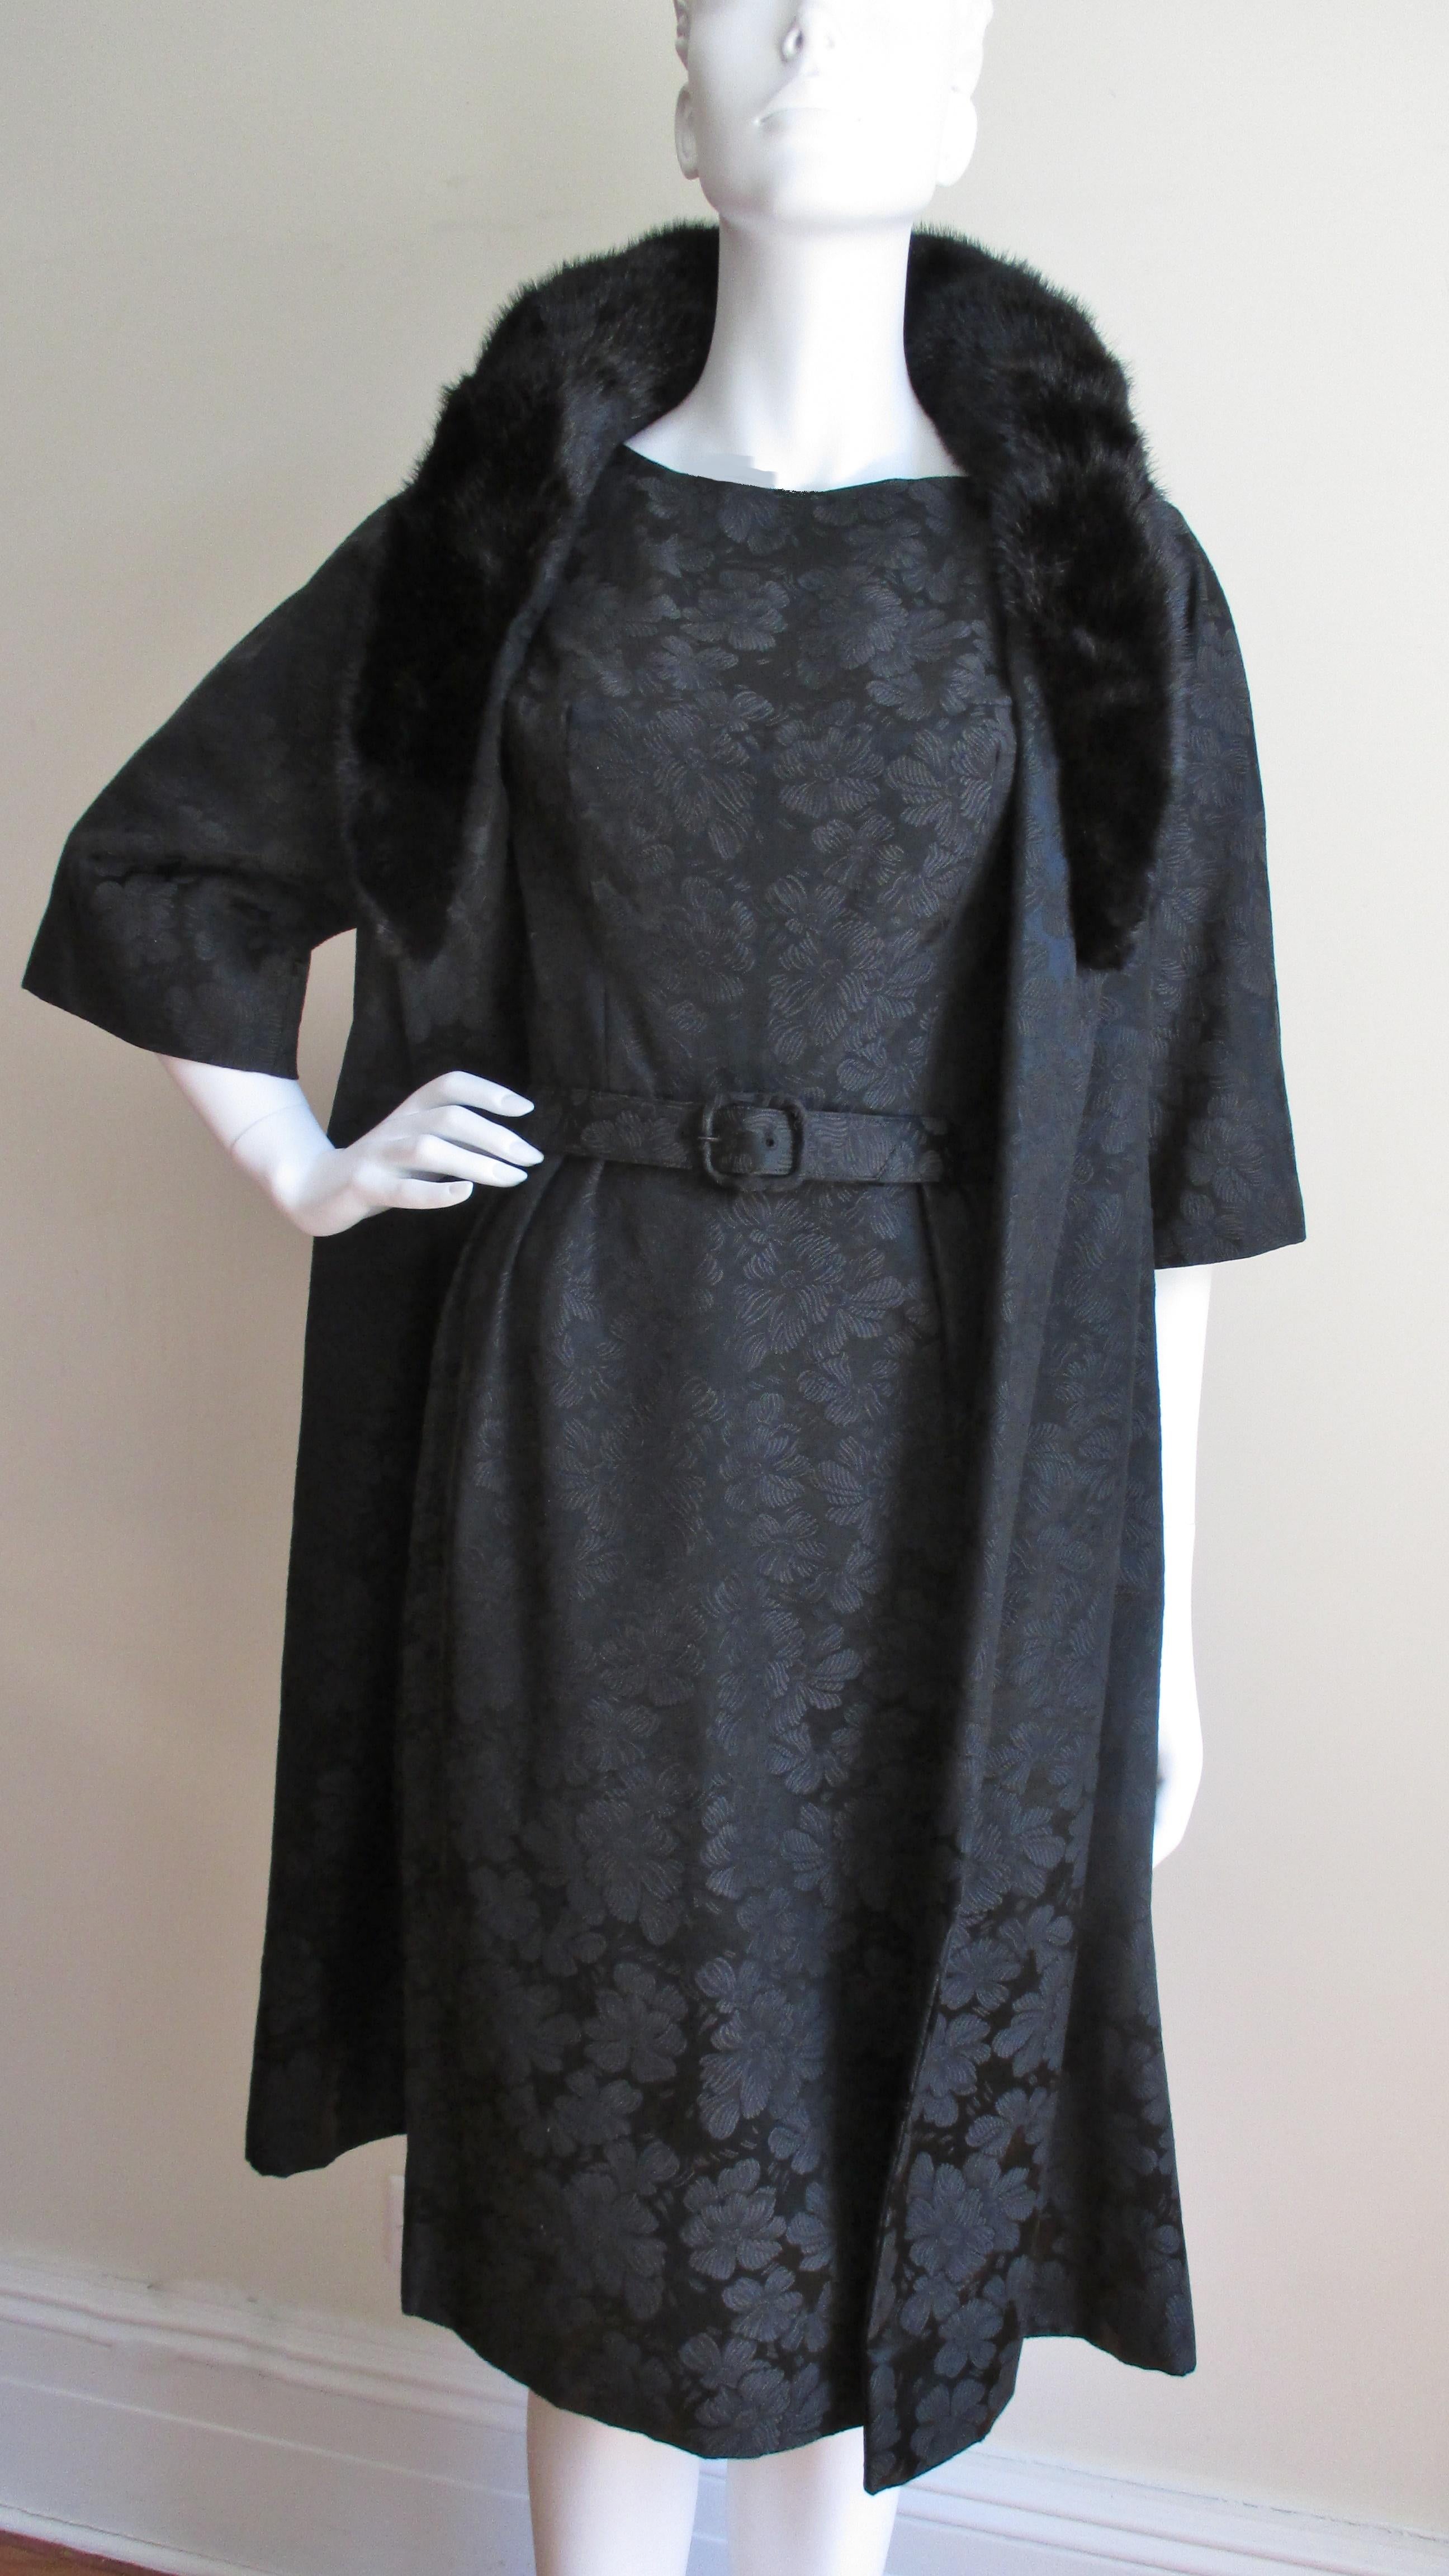 Ein seltenes, neues Kleid- und Mantelset von Lillie Rubin aus den 1950er Jahren mit schwarzem Seidendamast und Blumenmuster. Das Kleid ist halb tailliert, hat einen passenden Gürtel, einen Bateau-Ausschnitt und einen geraden Rock. Der